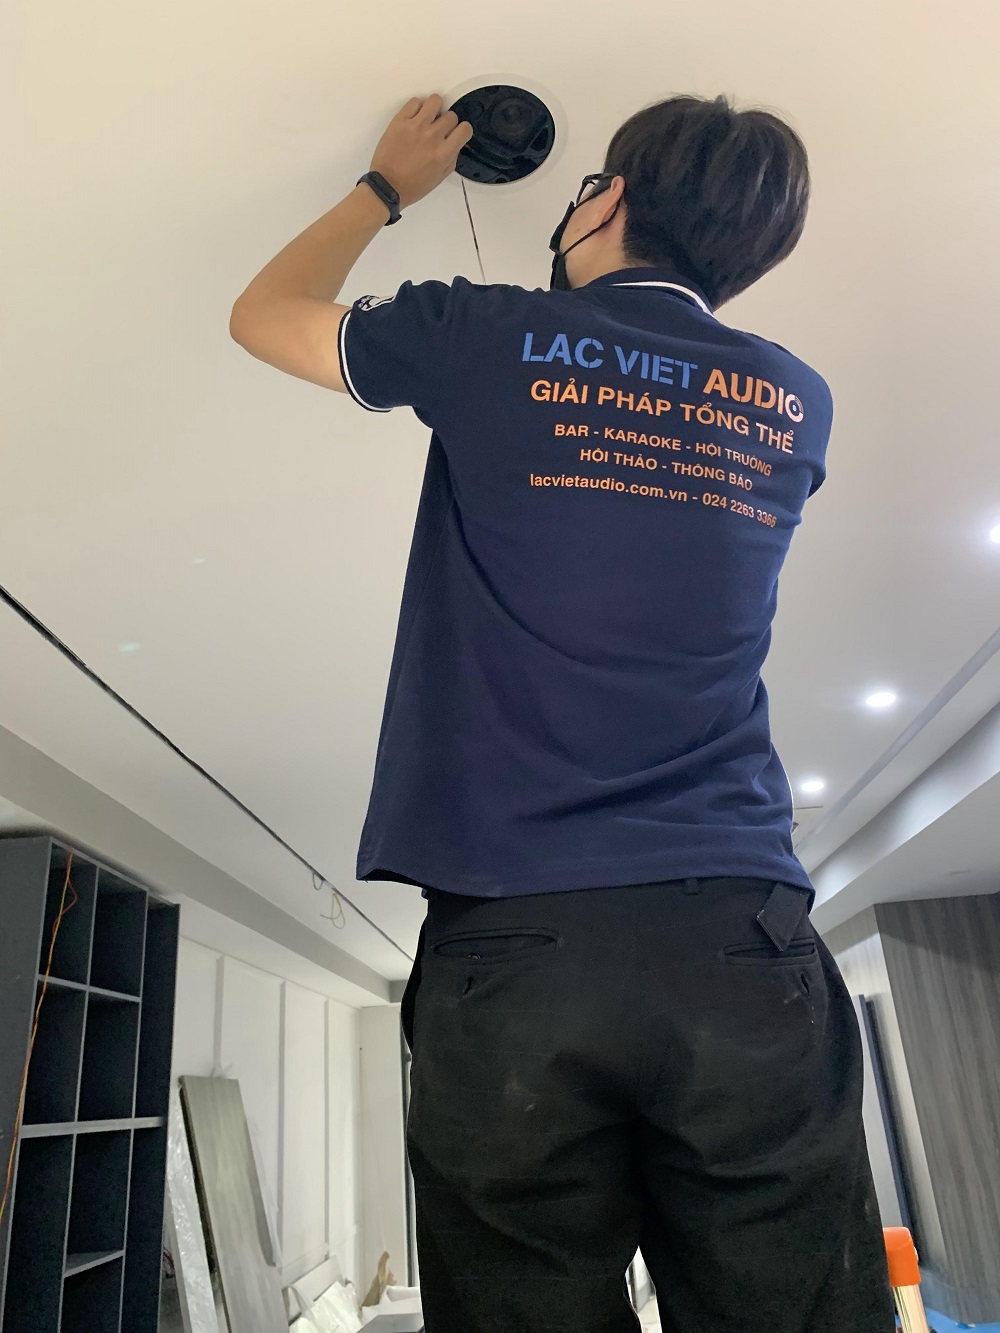 Kỹ thuật viên Lạc Việt Audio đang lắp đặt loa